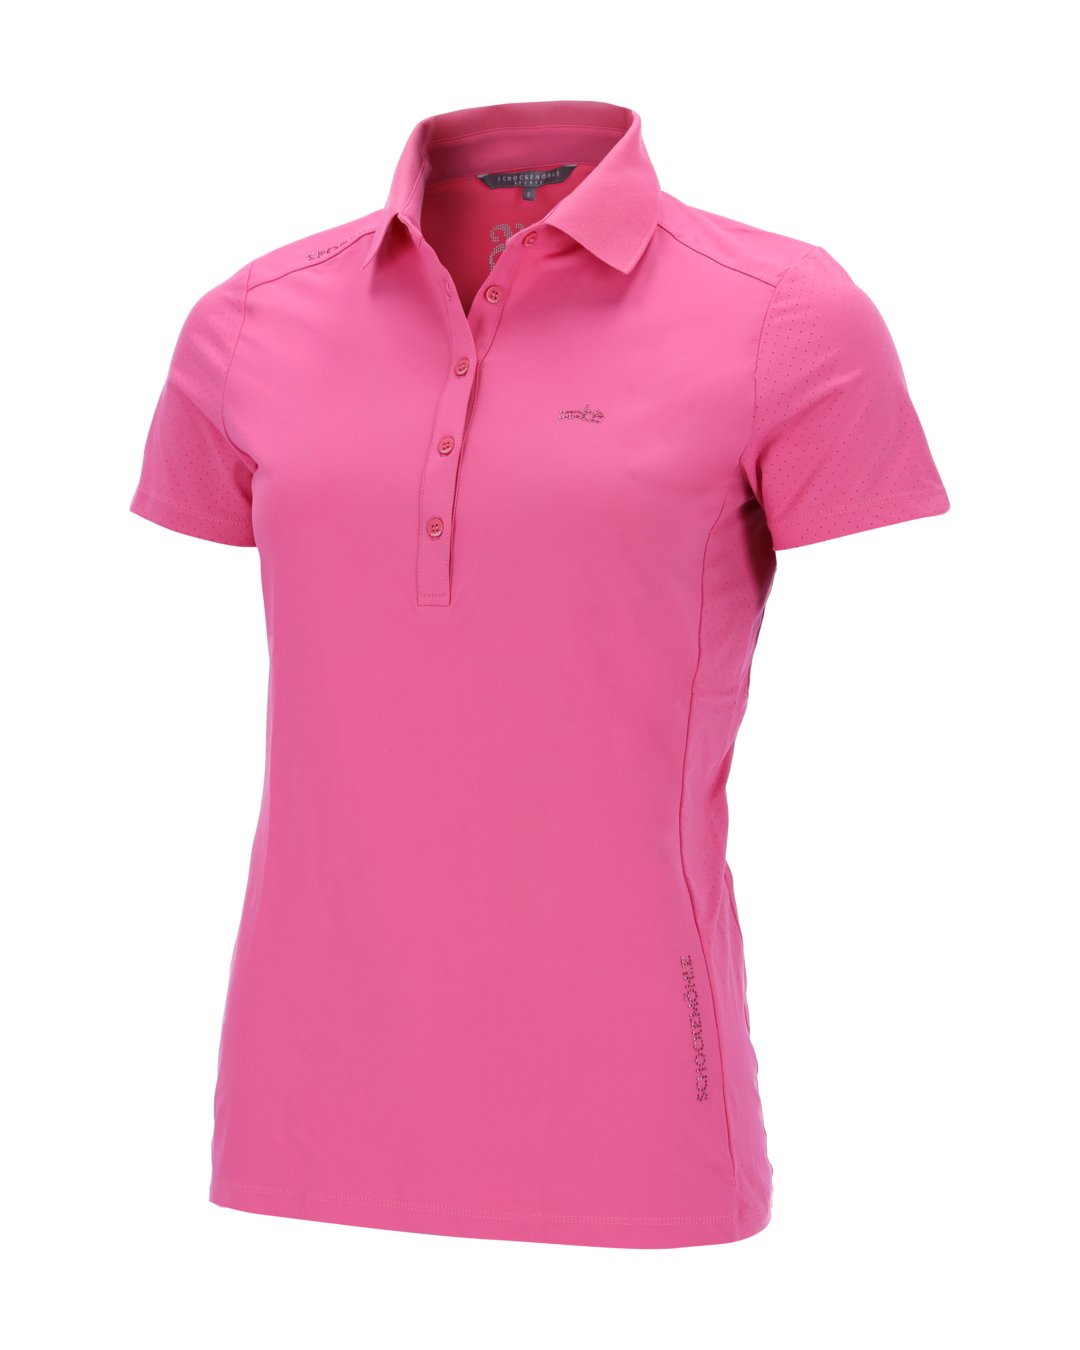 Poloshirt SPMilla Style Hot Pink XL